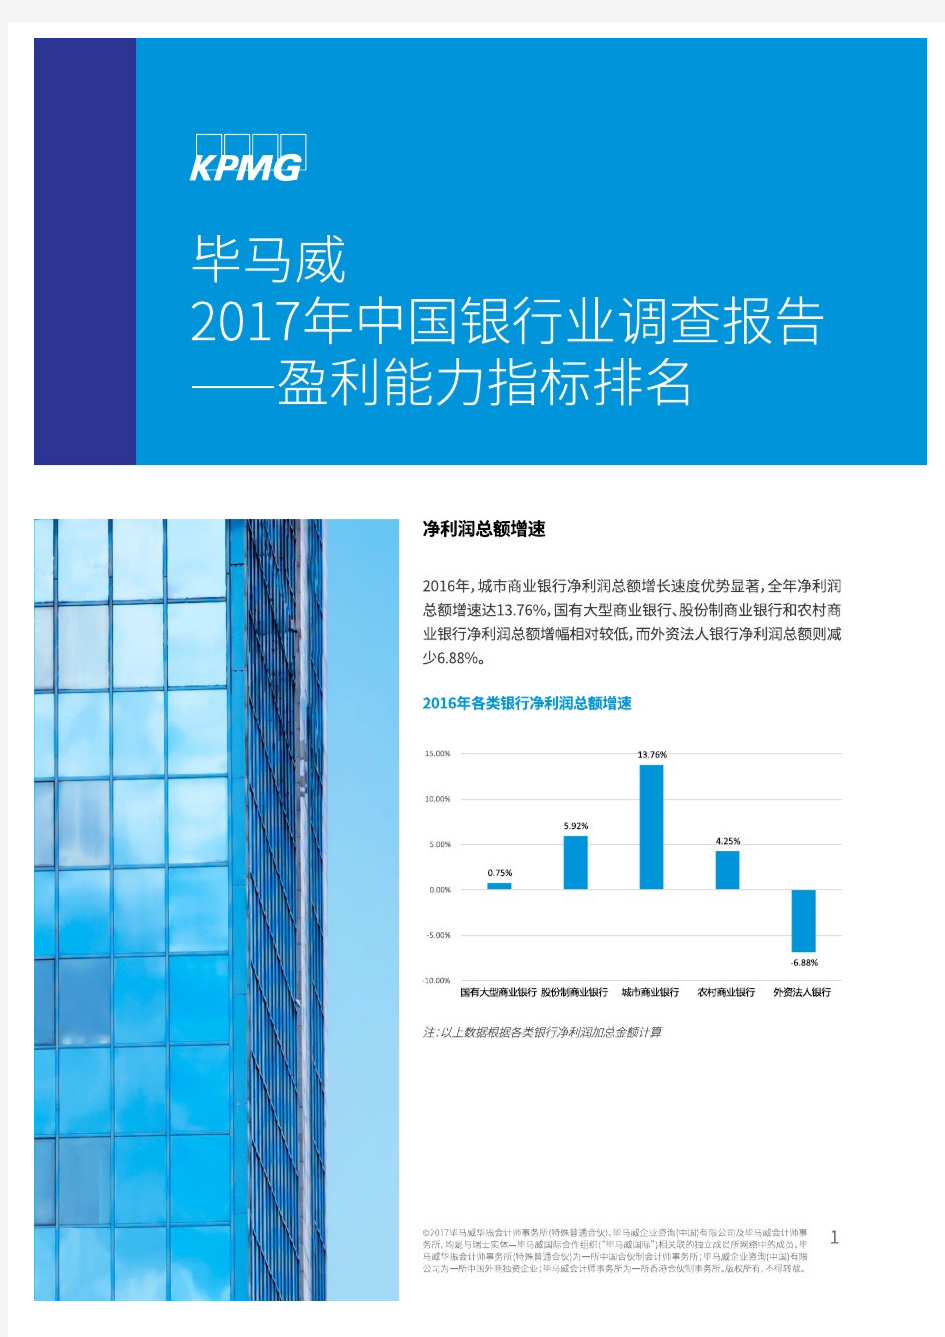 中国银行业调查报告-盈利能力指标排行(毕马威)